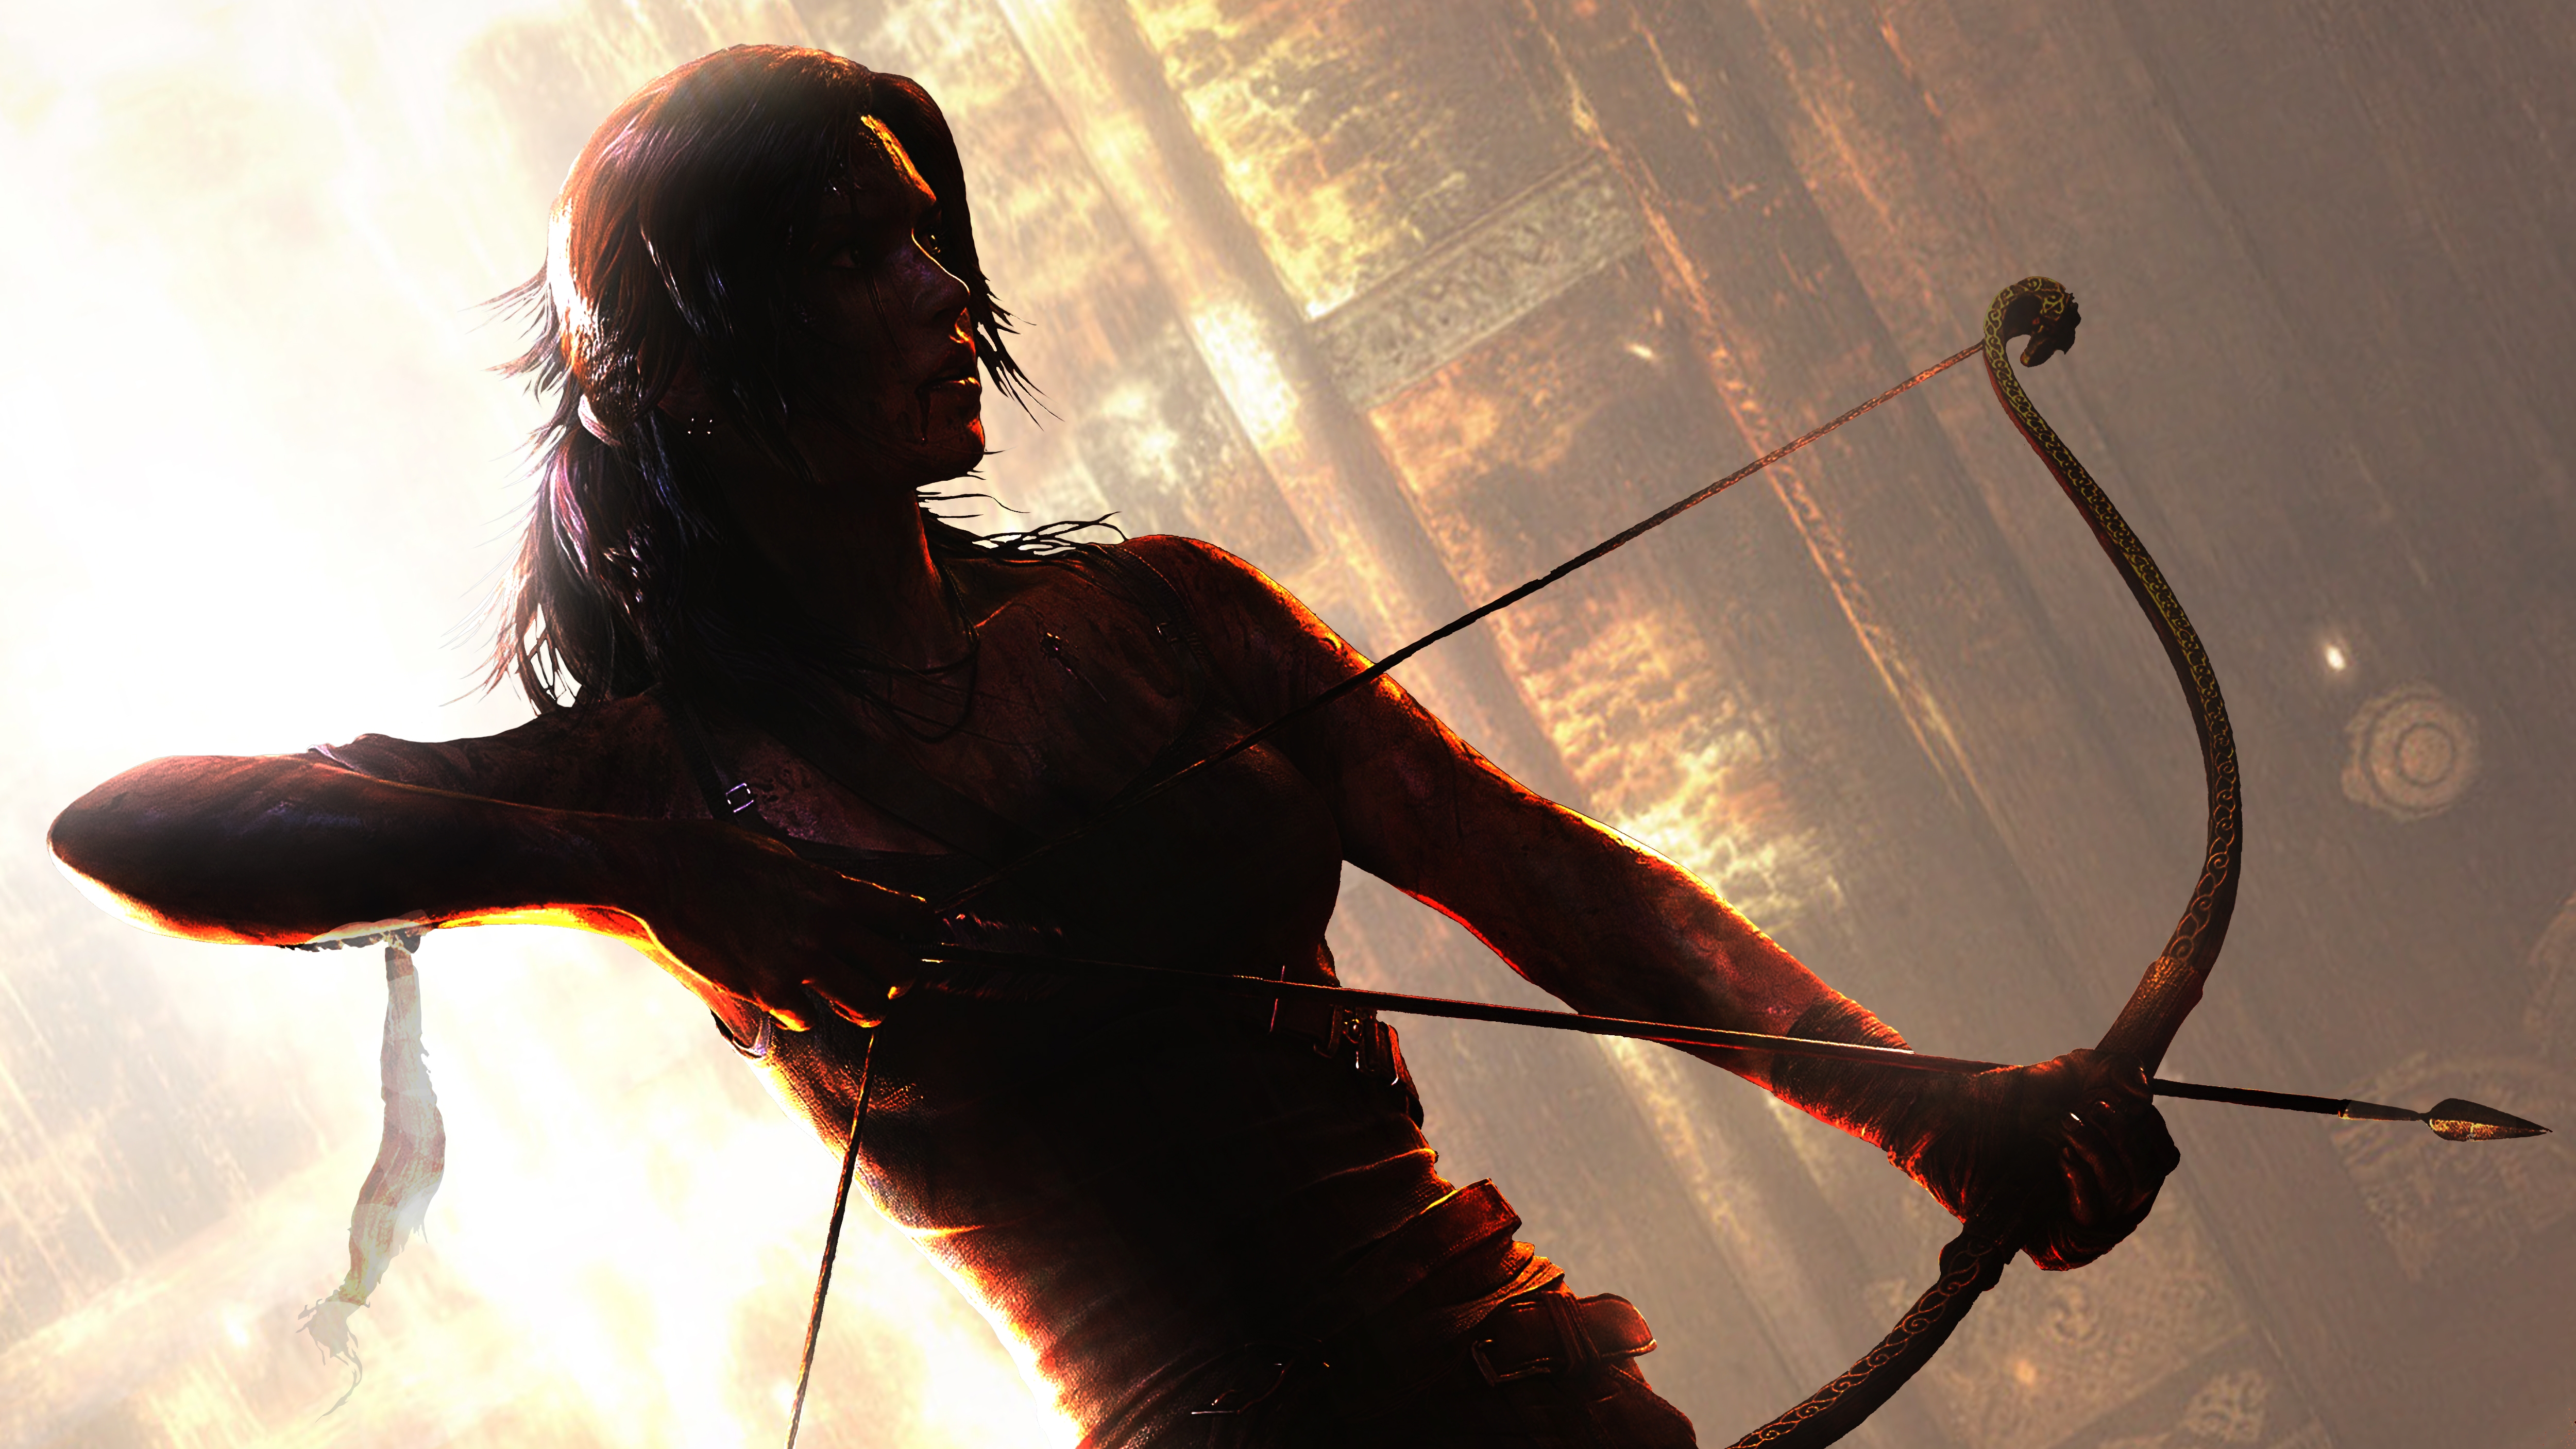 Tomb Raider 4k Ultra HD Wallpaper. 